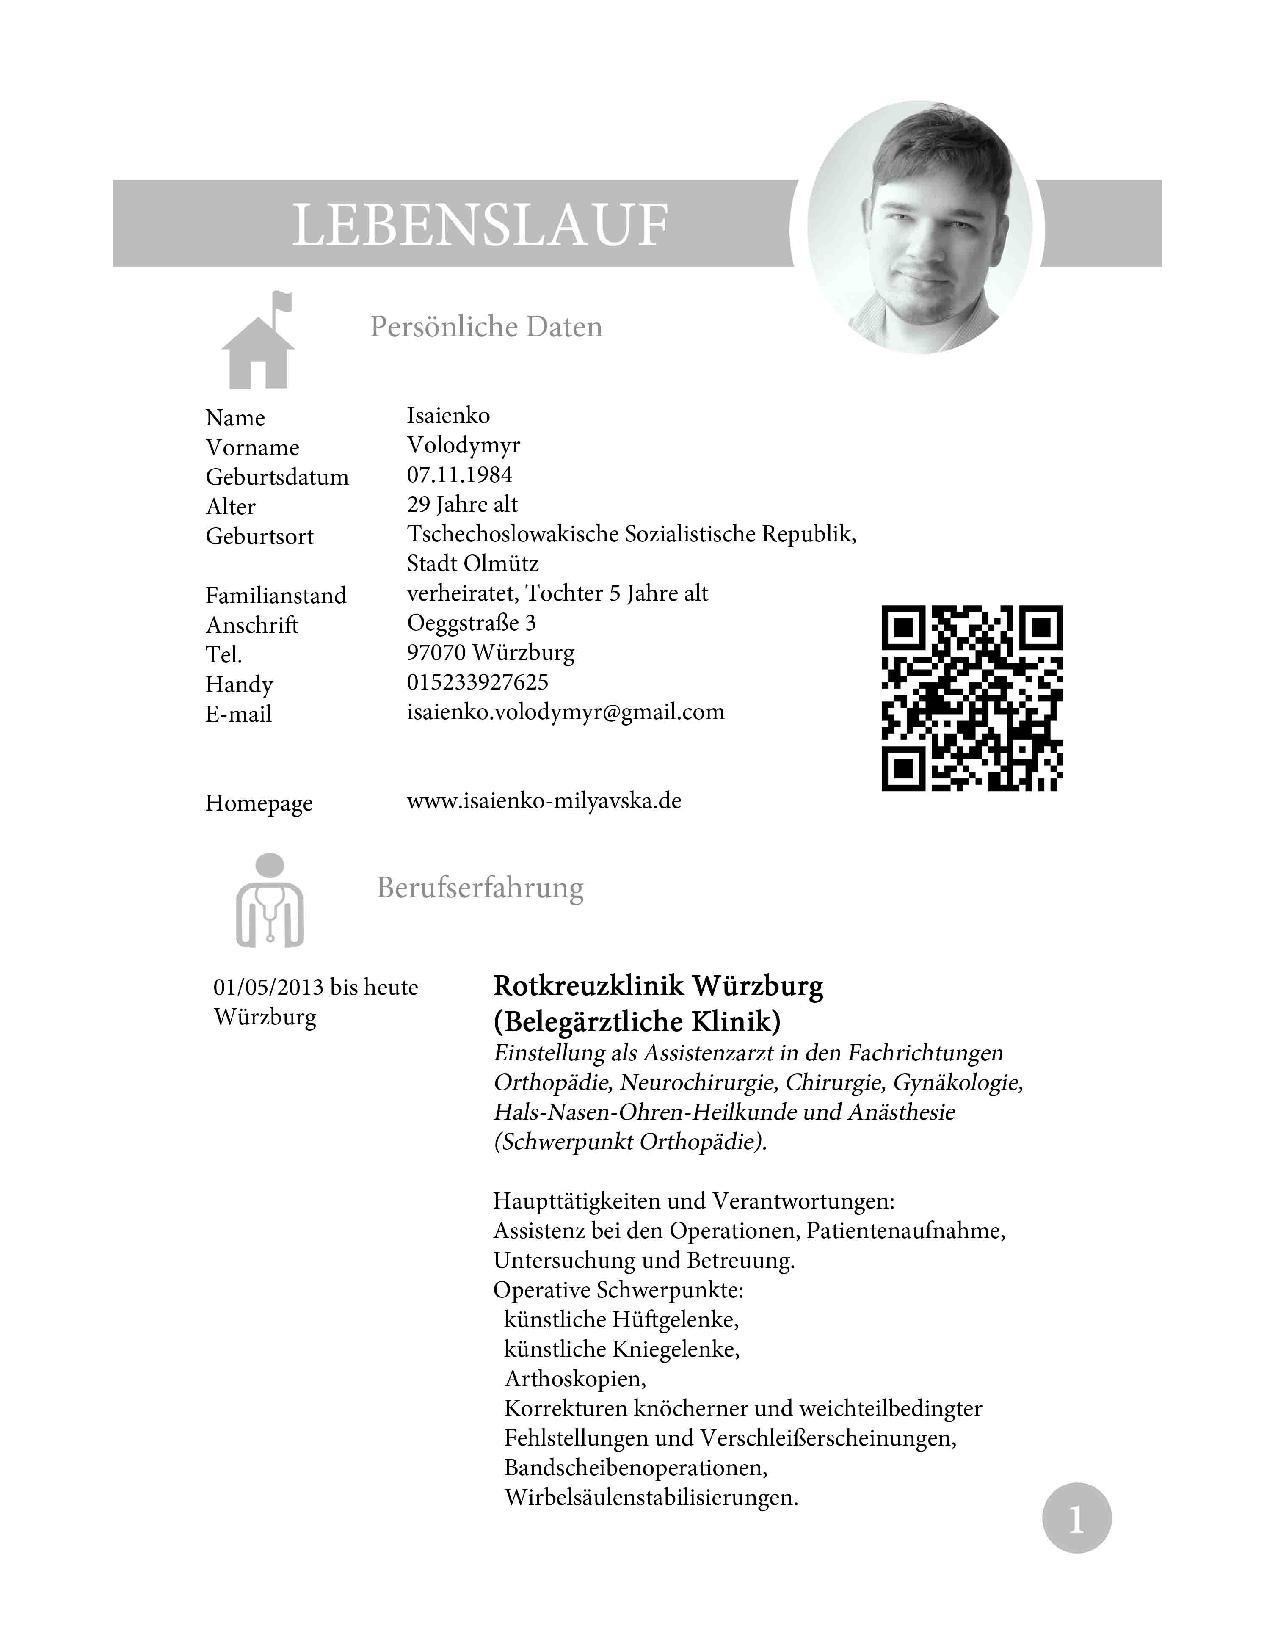 Удачное резюме – ключ к успеху при трудоустройстве в Германии - 29 Июля 2014